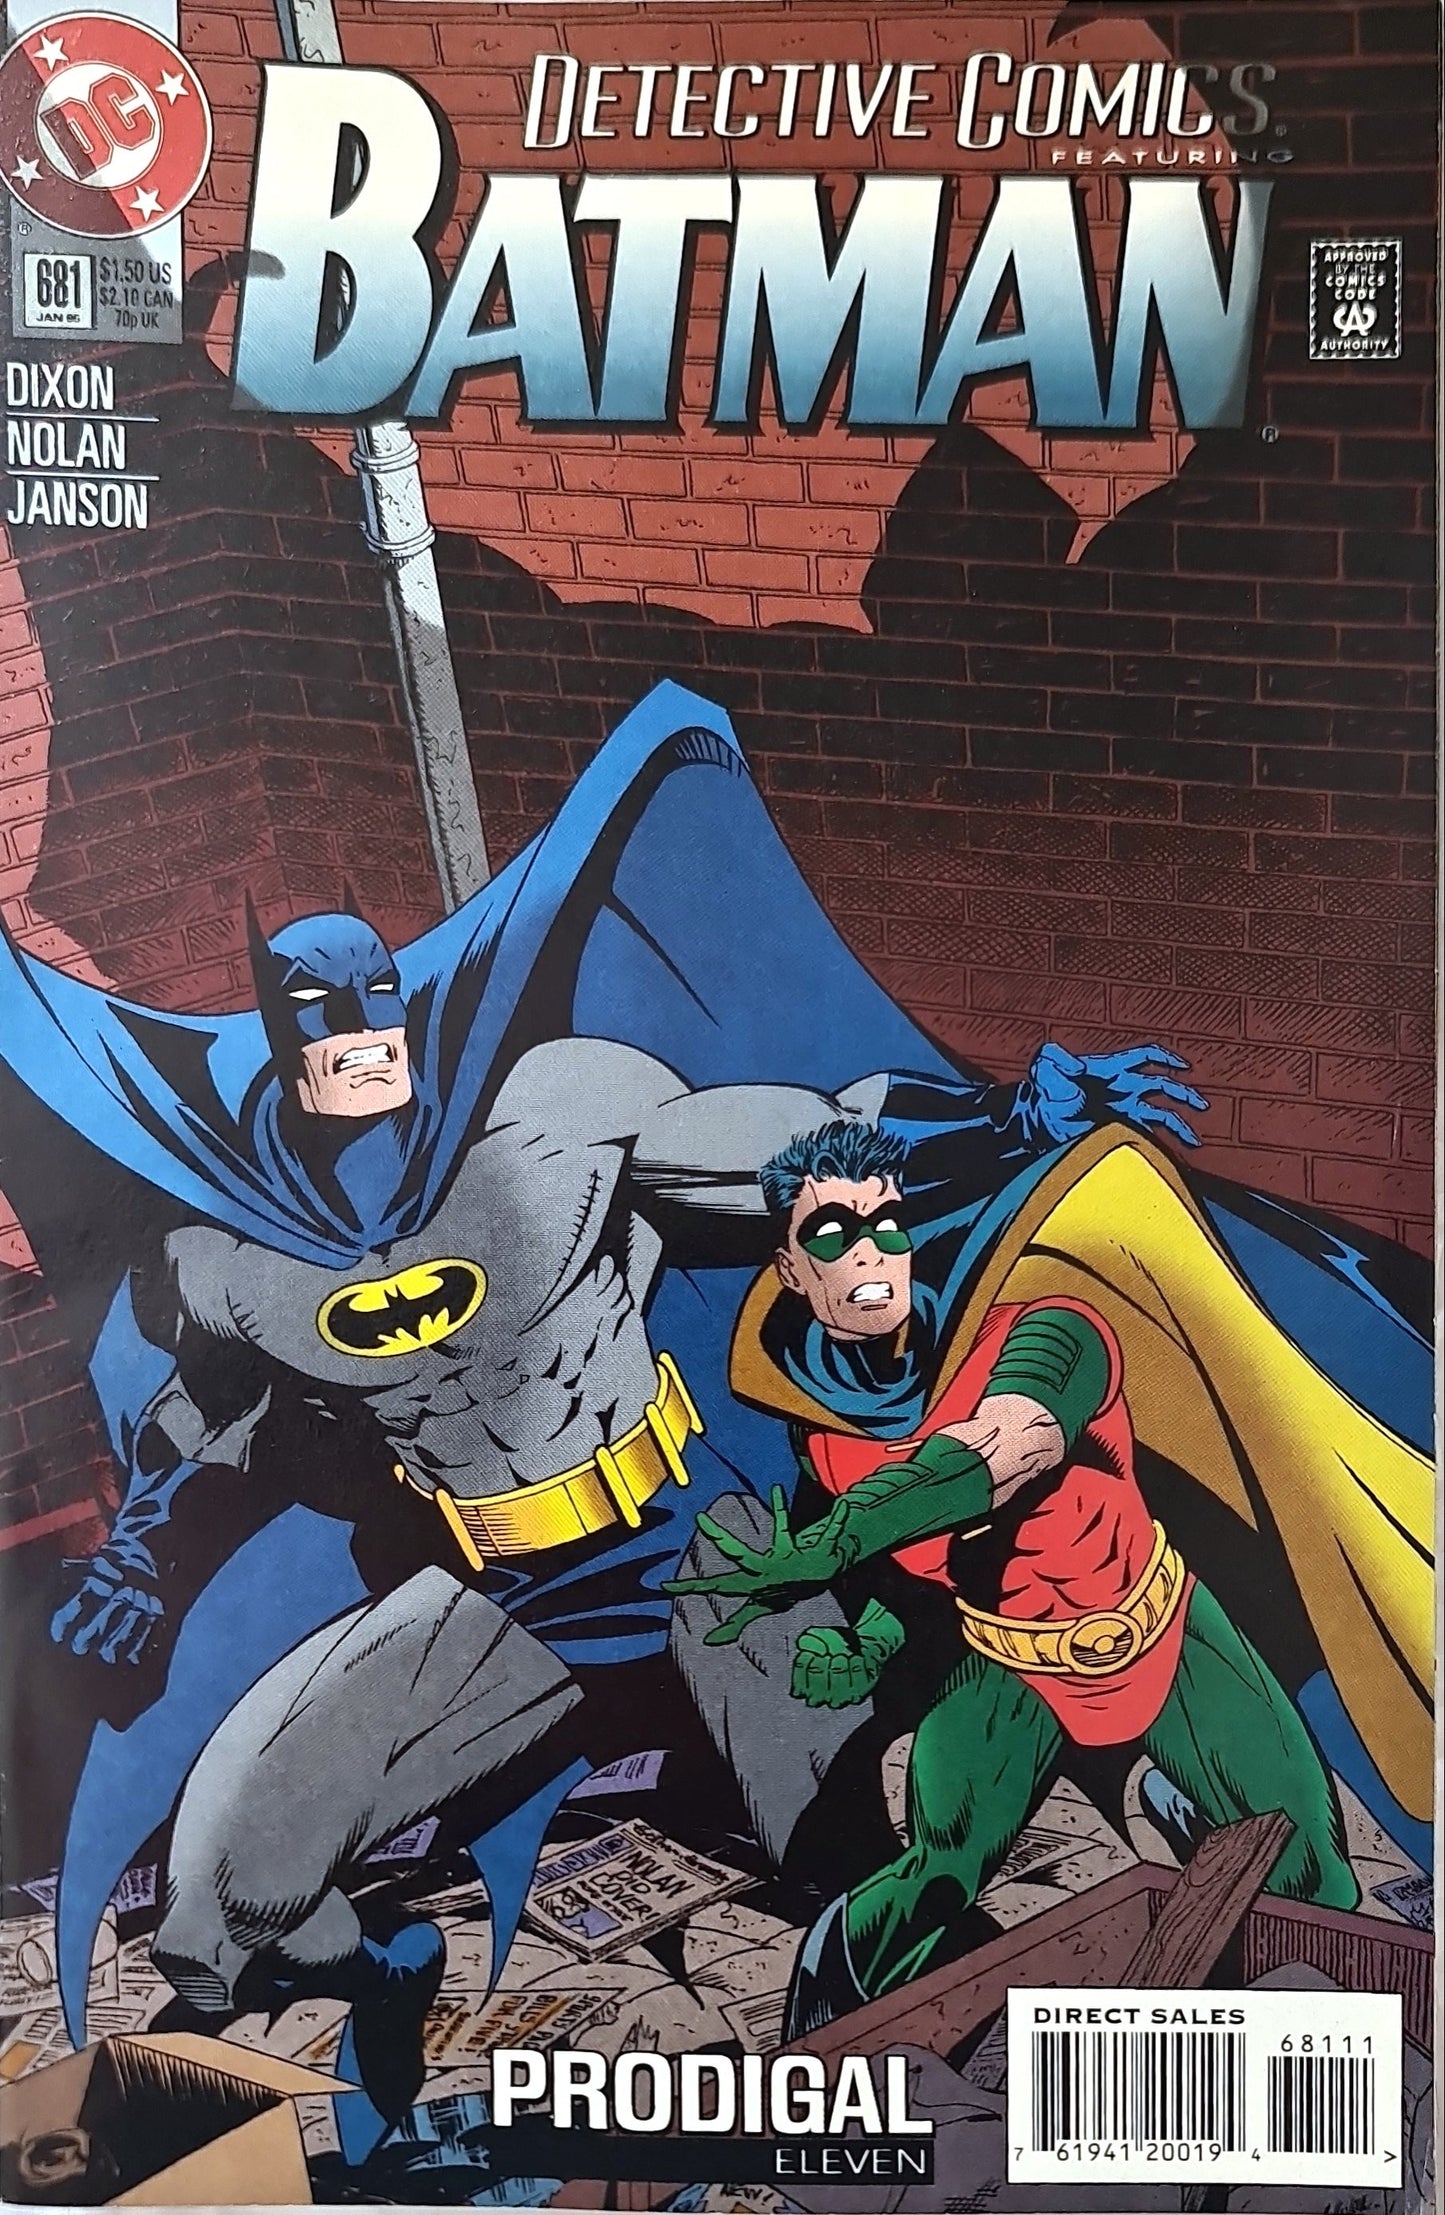 Detective comics #681 (1995) Batman And Robin Comic Book